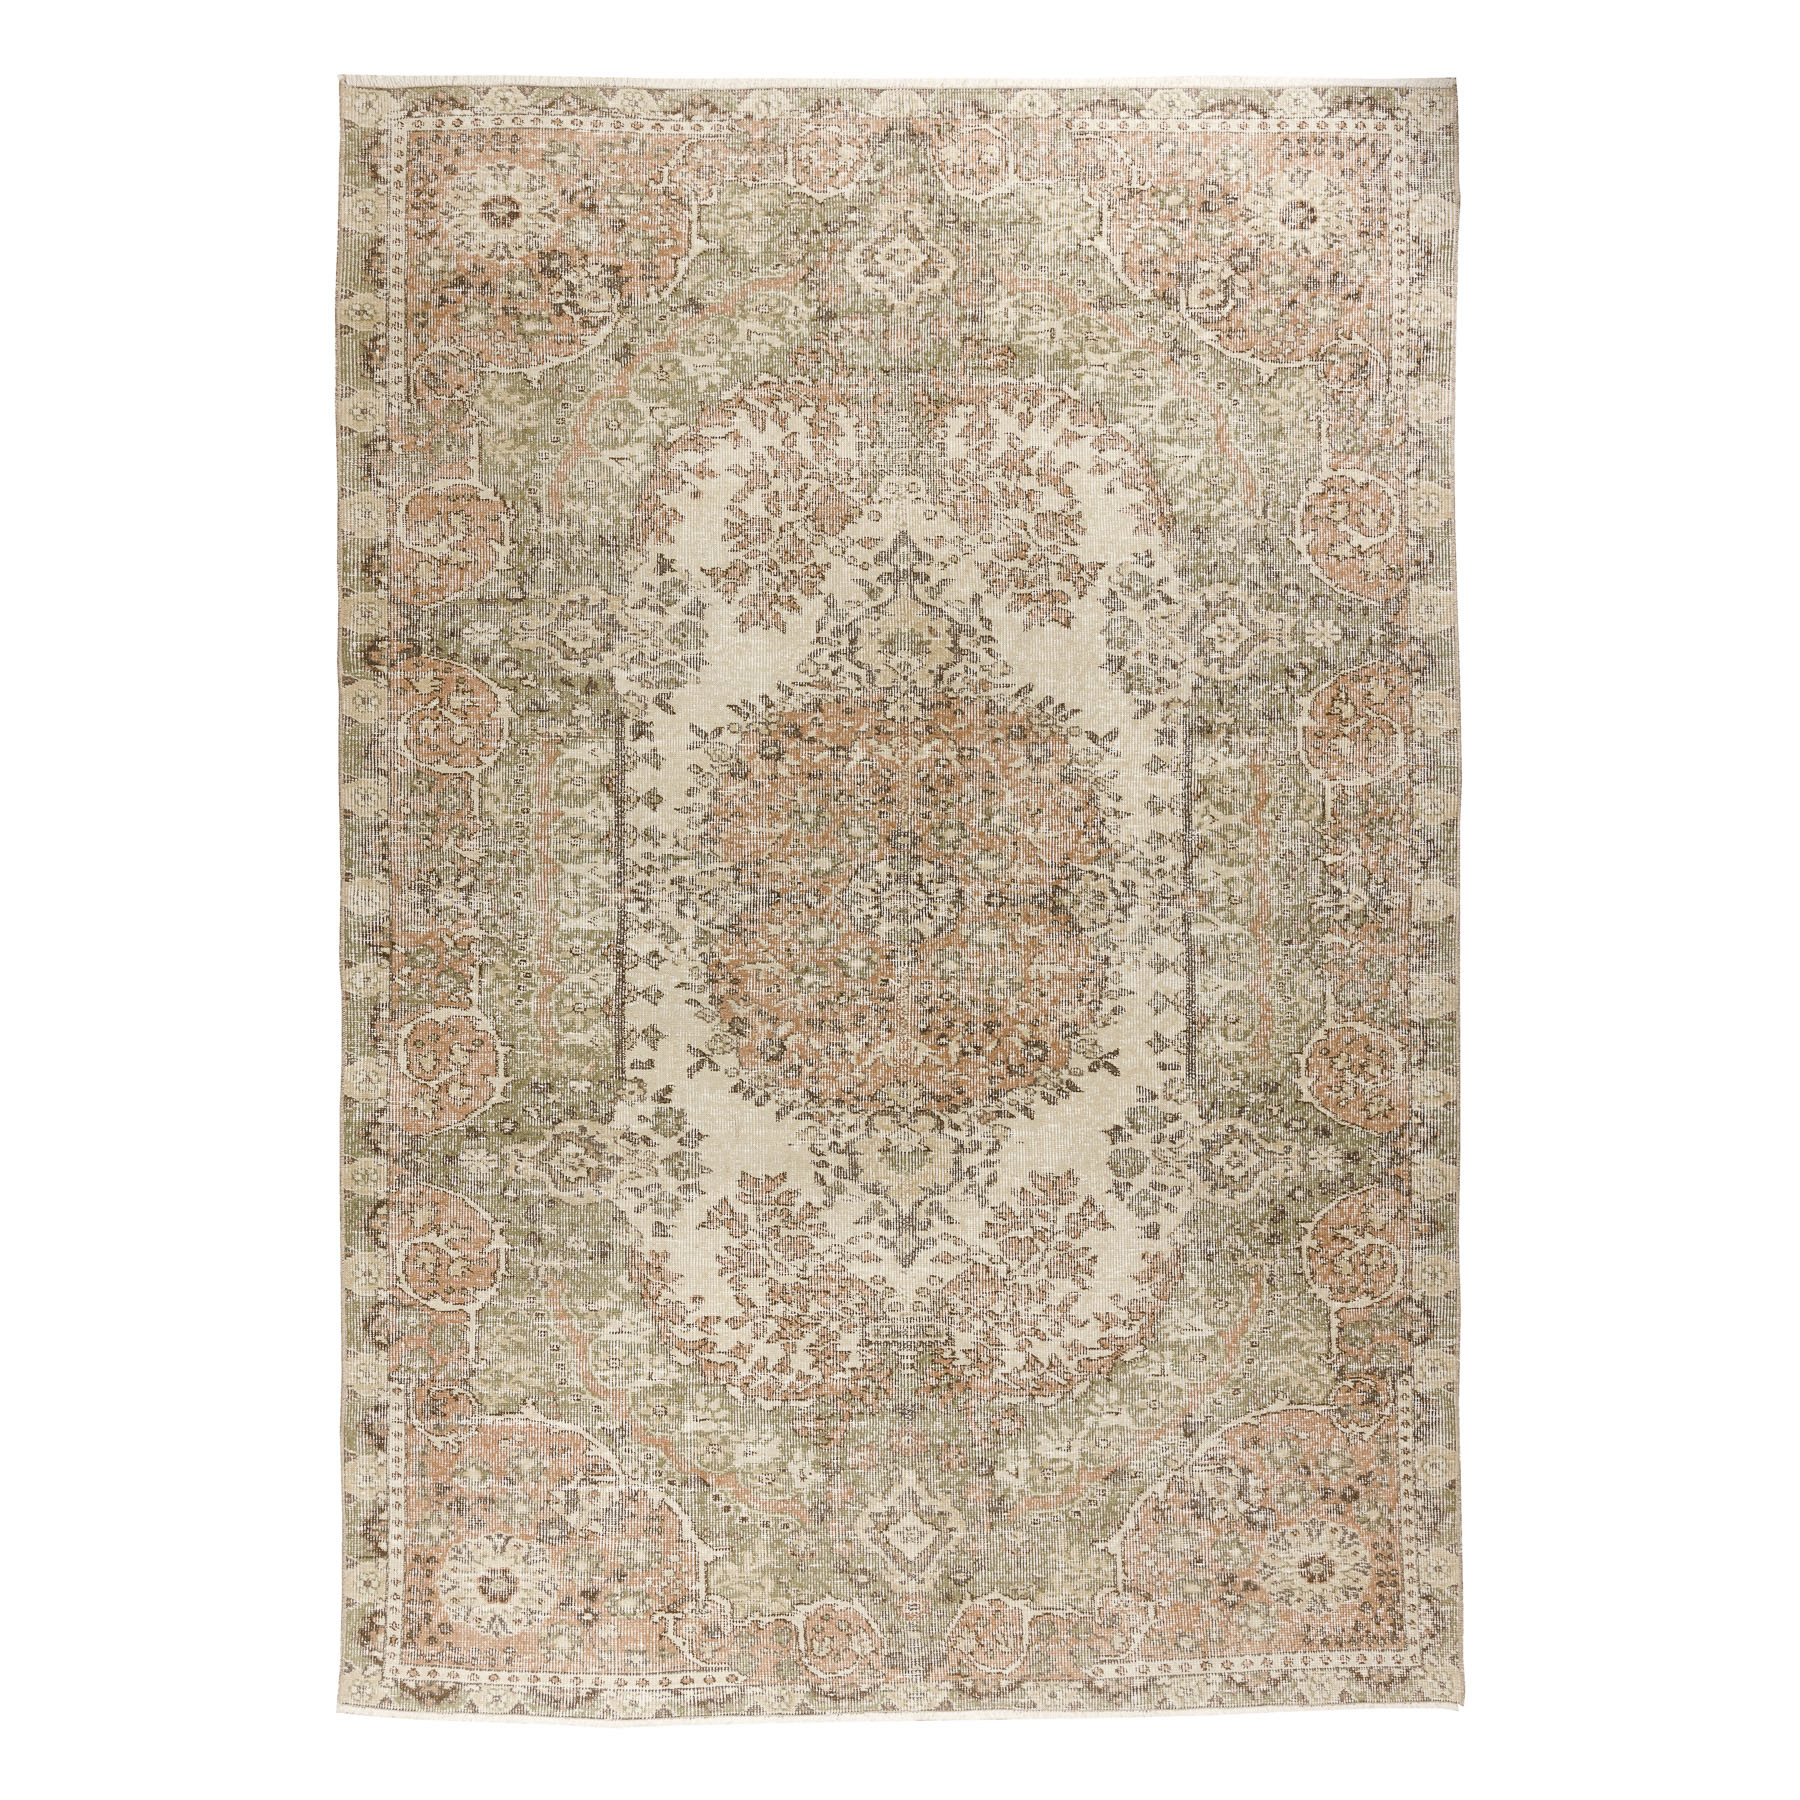 Ručne tkaný vlnený koberec Vintage 10290 ornament / kvety, béžový / zelený